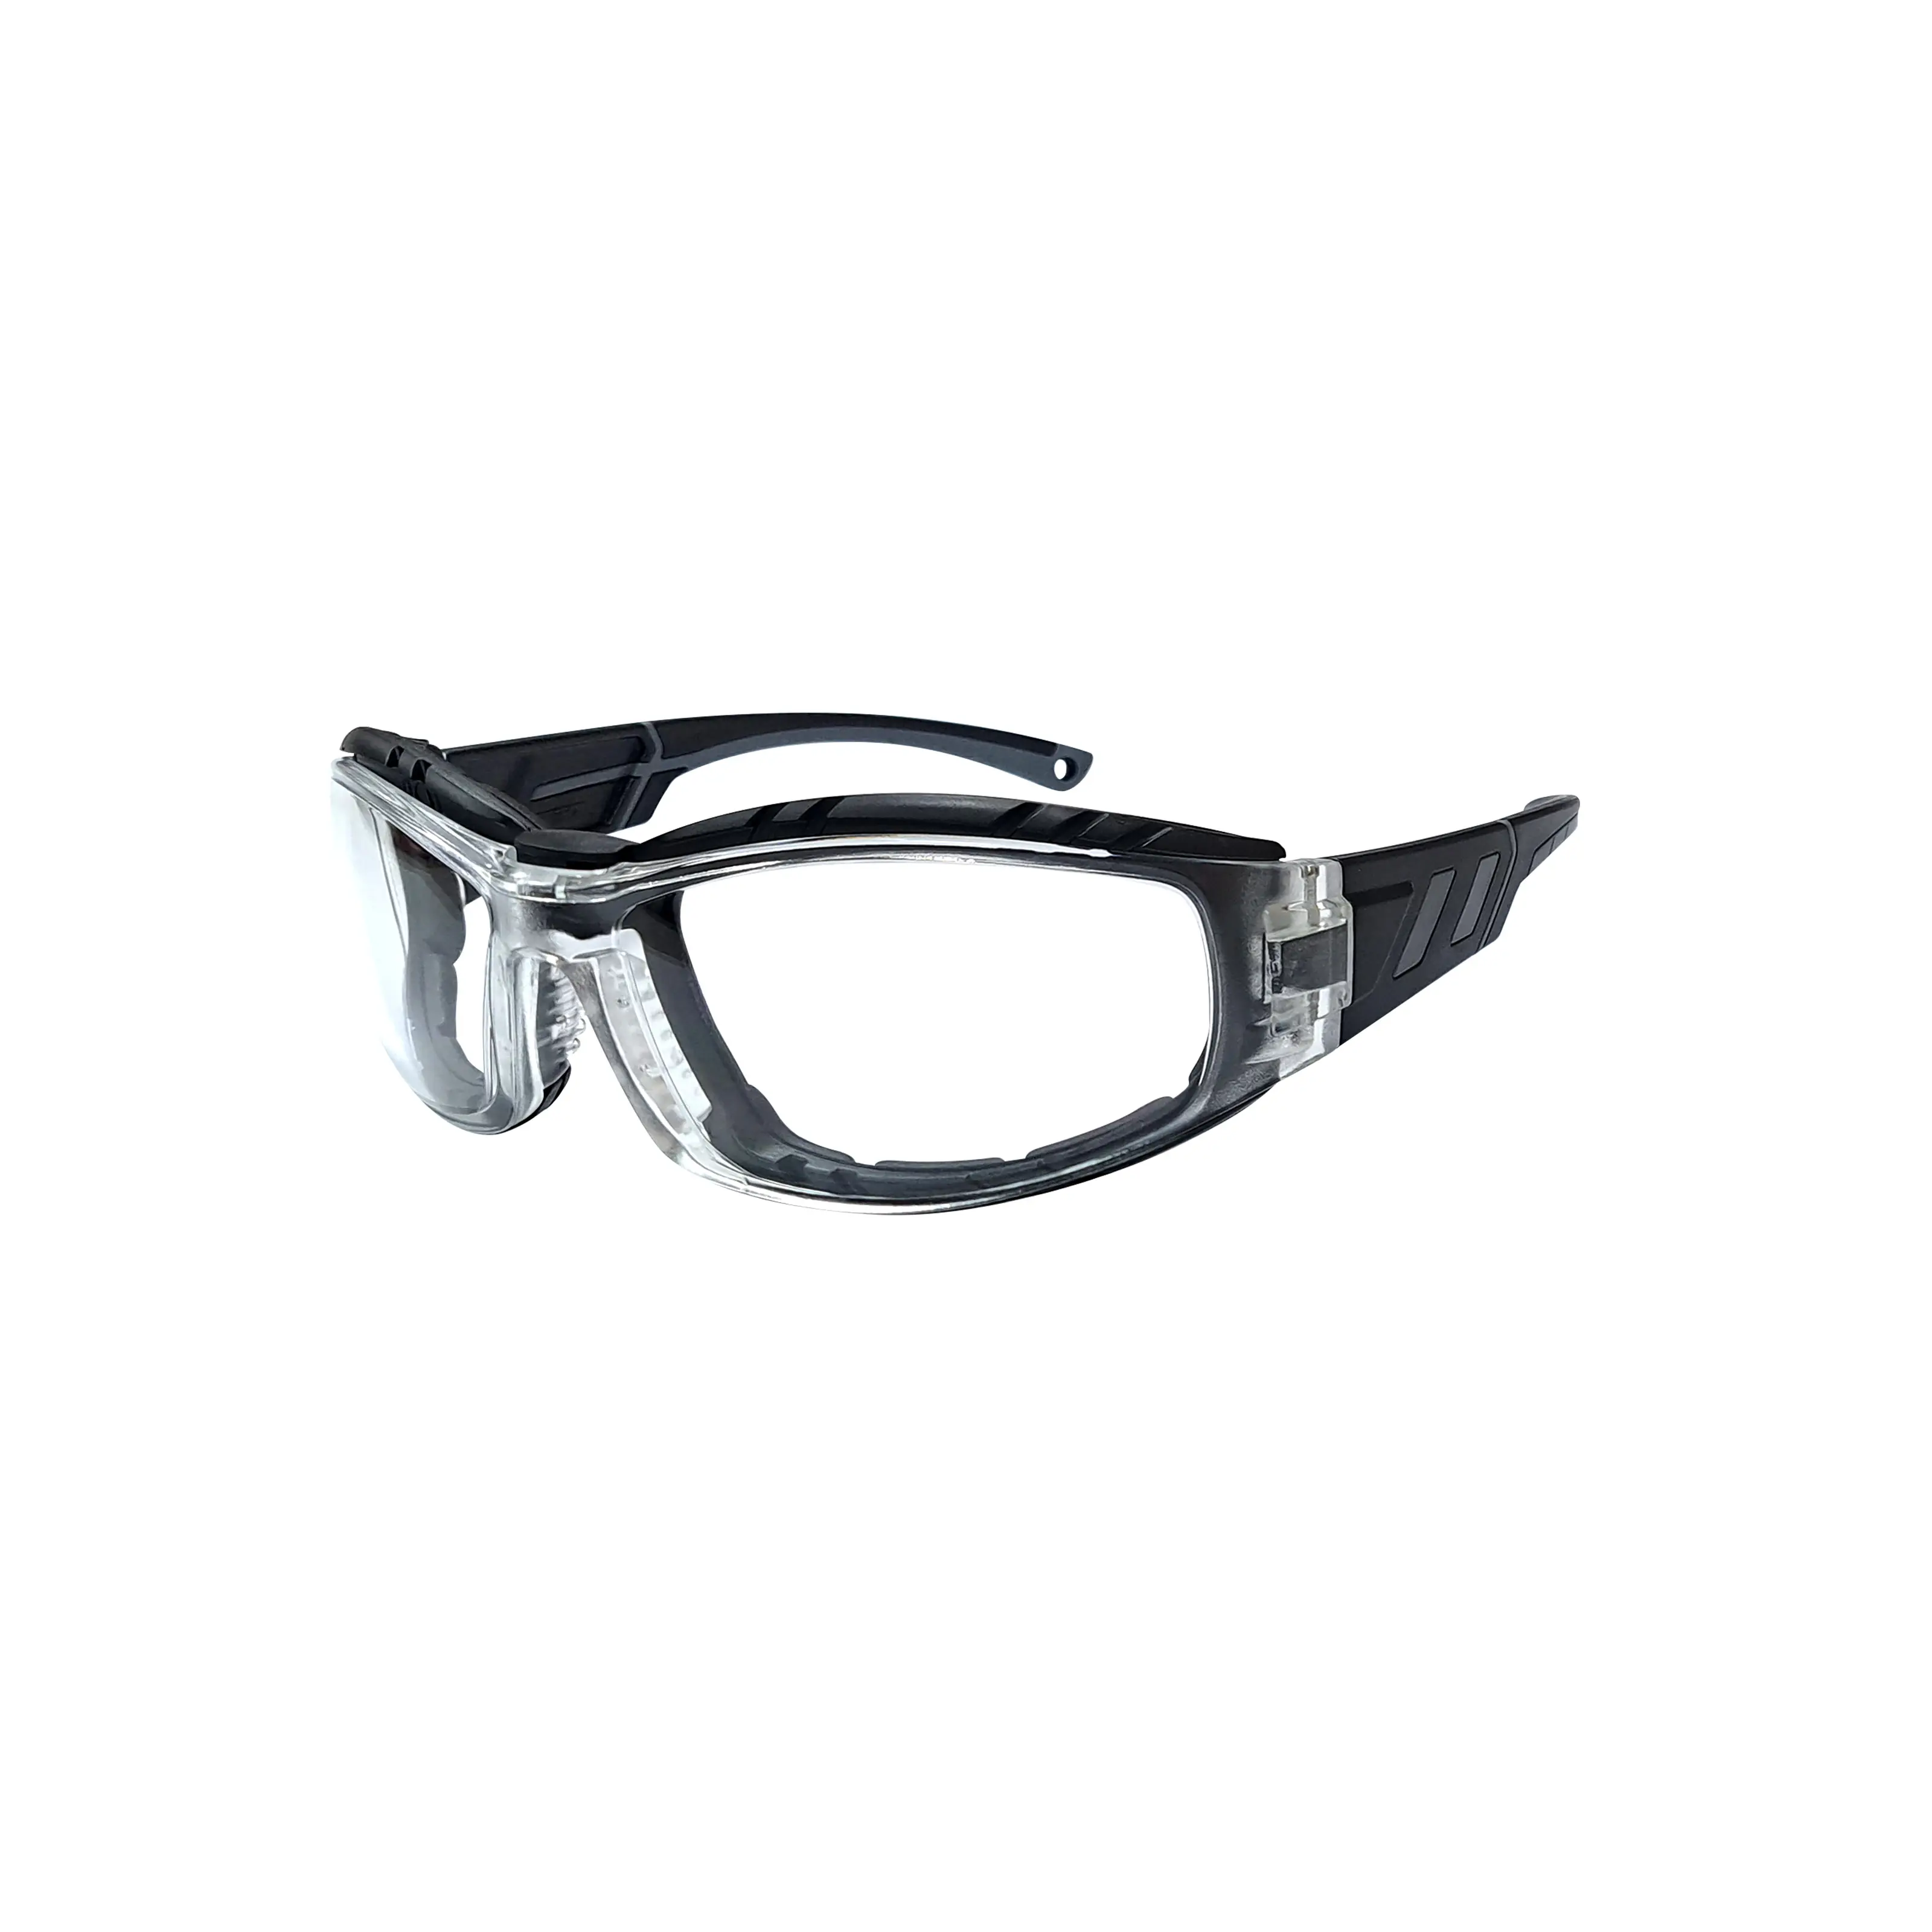 Hcsp07 Gemaakt In Taiwan Veiligheidsbril Oogkleding Uv Veiligheidsbril Industriële Veiligheidsuitrusting Oogbeschermingsbril